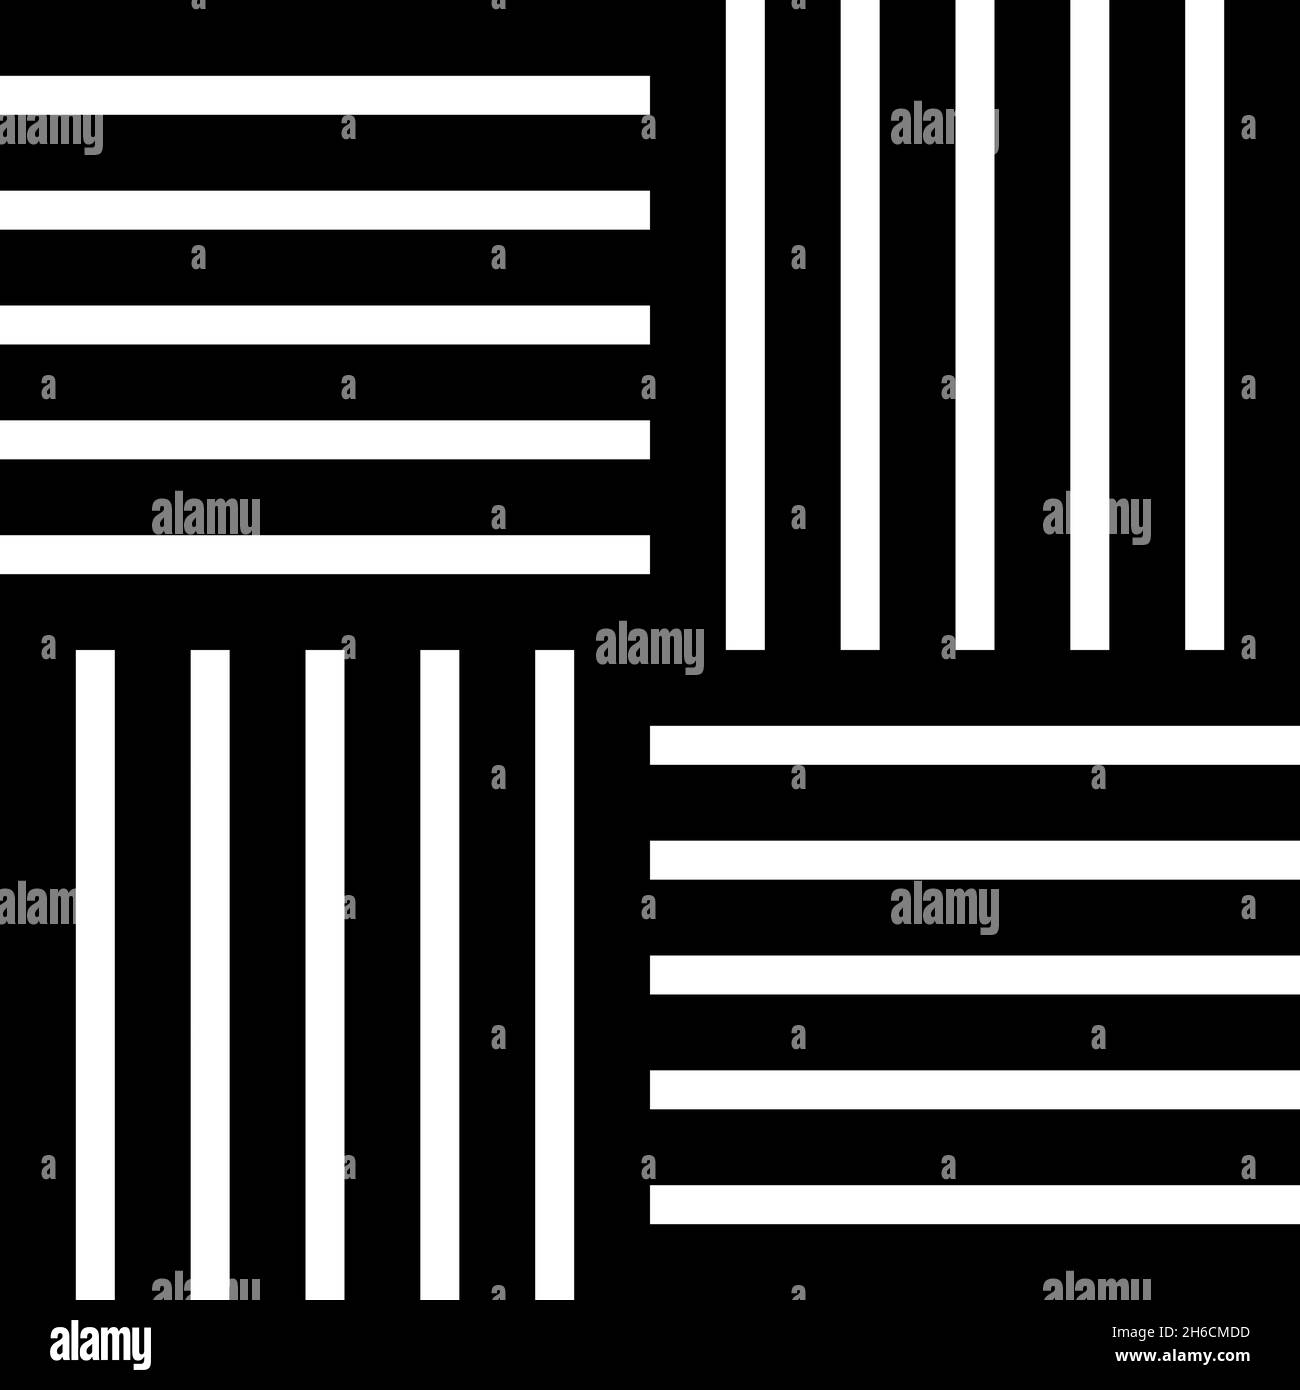 Carrelage forme carrée parquet matériau de plancher en bois laminé panneau de planche icône noir couleur vecteur illustration style plat image simple Illustration de Vecteur